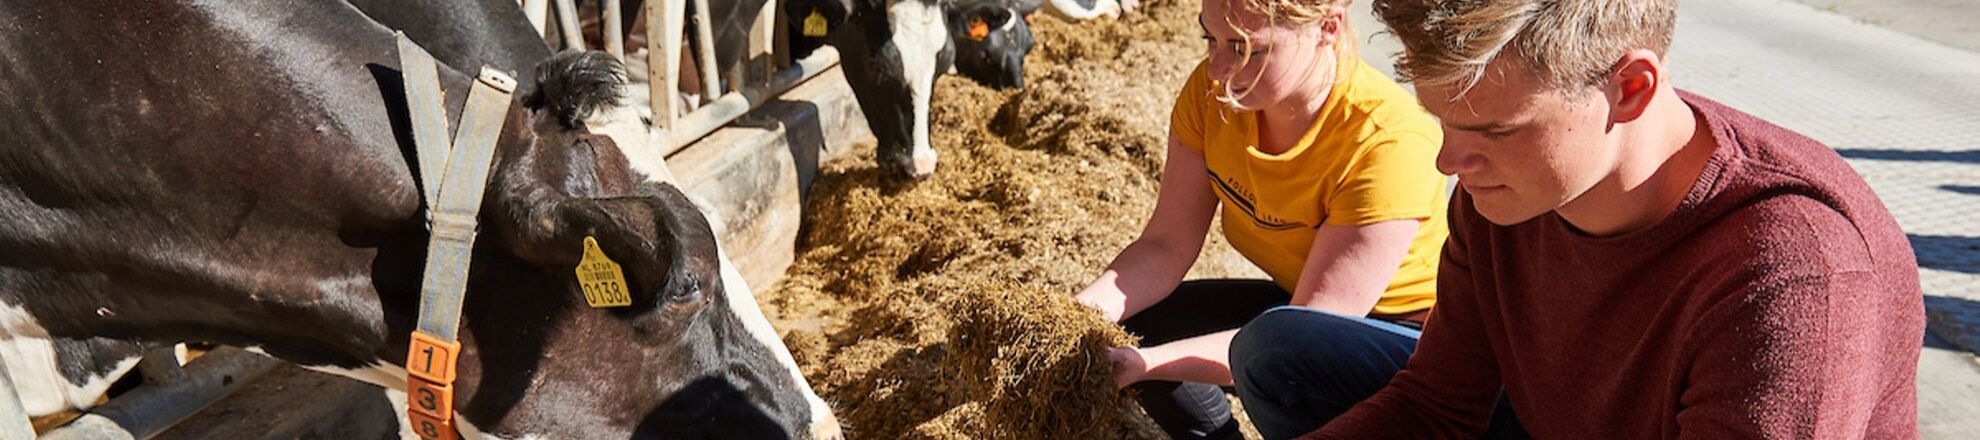 student onderzoek voer voeding koeien voerrek aeres farms aeres hogeschool dronten